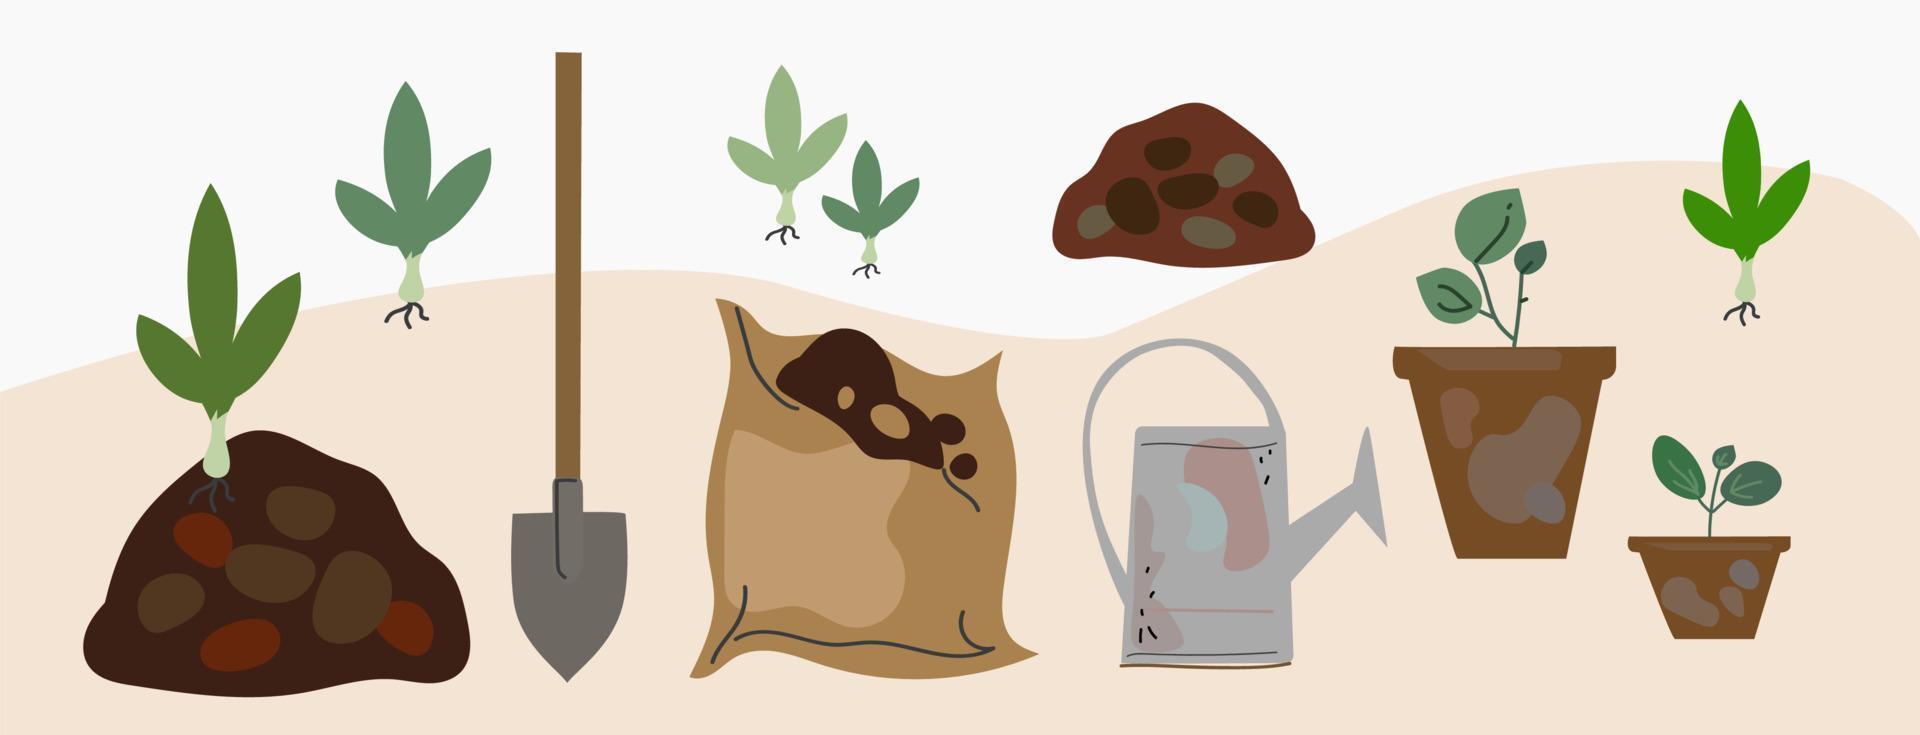 Komposthaufen. Thema organischer Kompost. Reihe von handgezeichneten Symbolen. Zero-Waste-Thema vektor